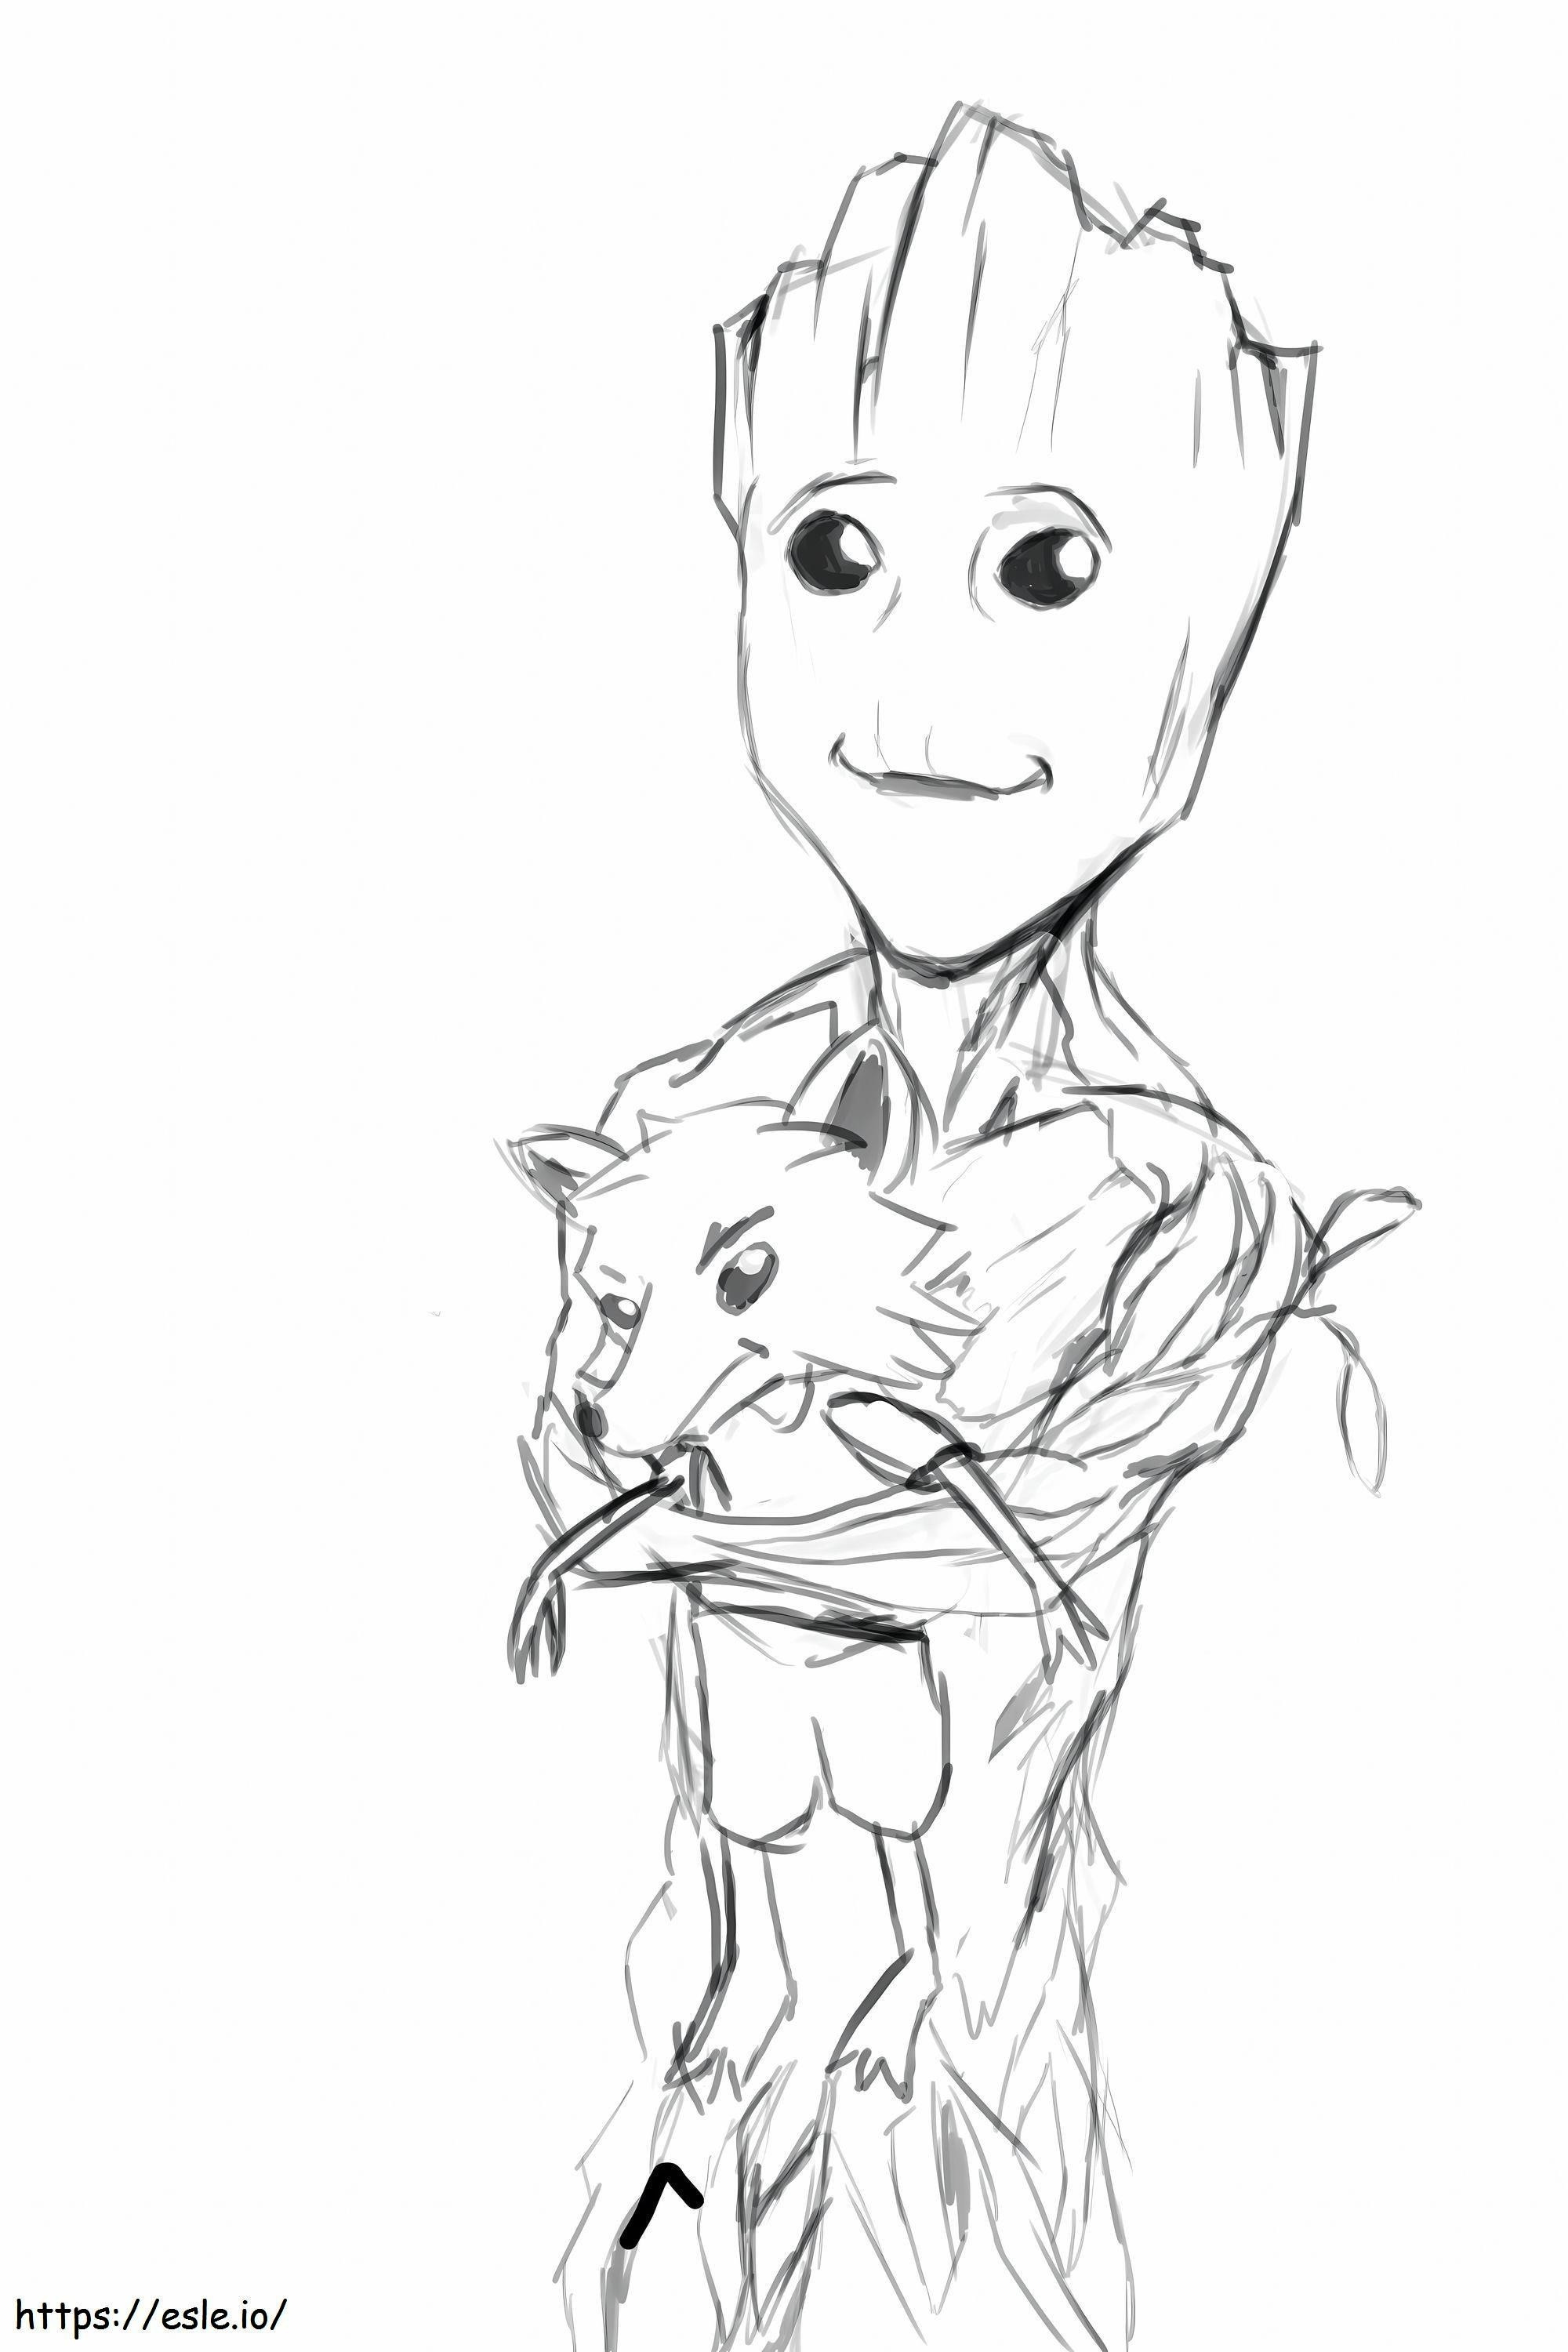 Desen cu Groot ținând în mână o vulpe solzită de colorat